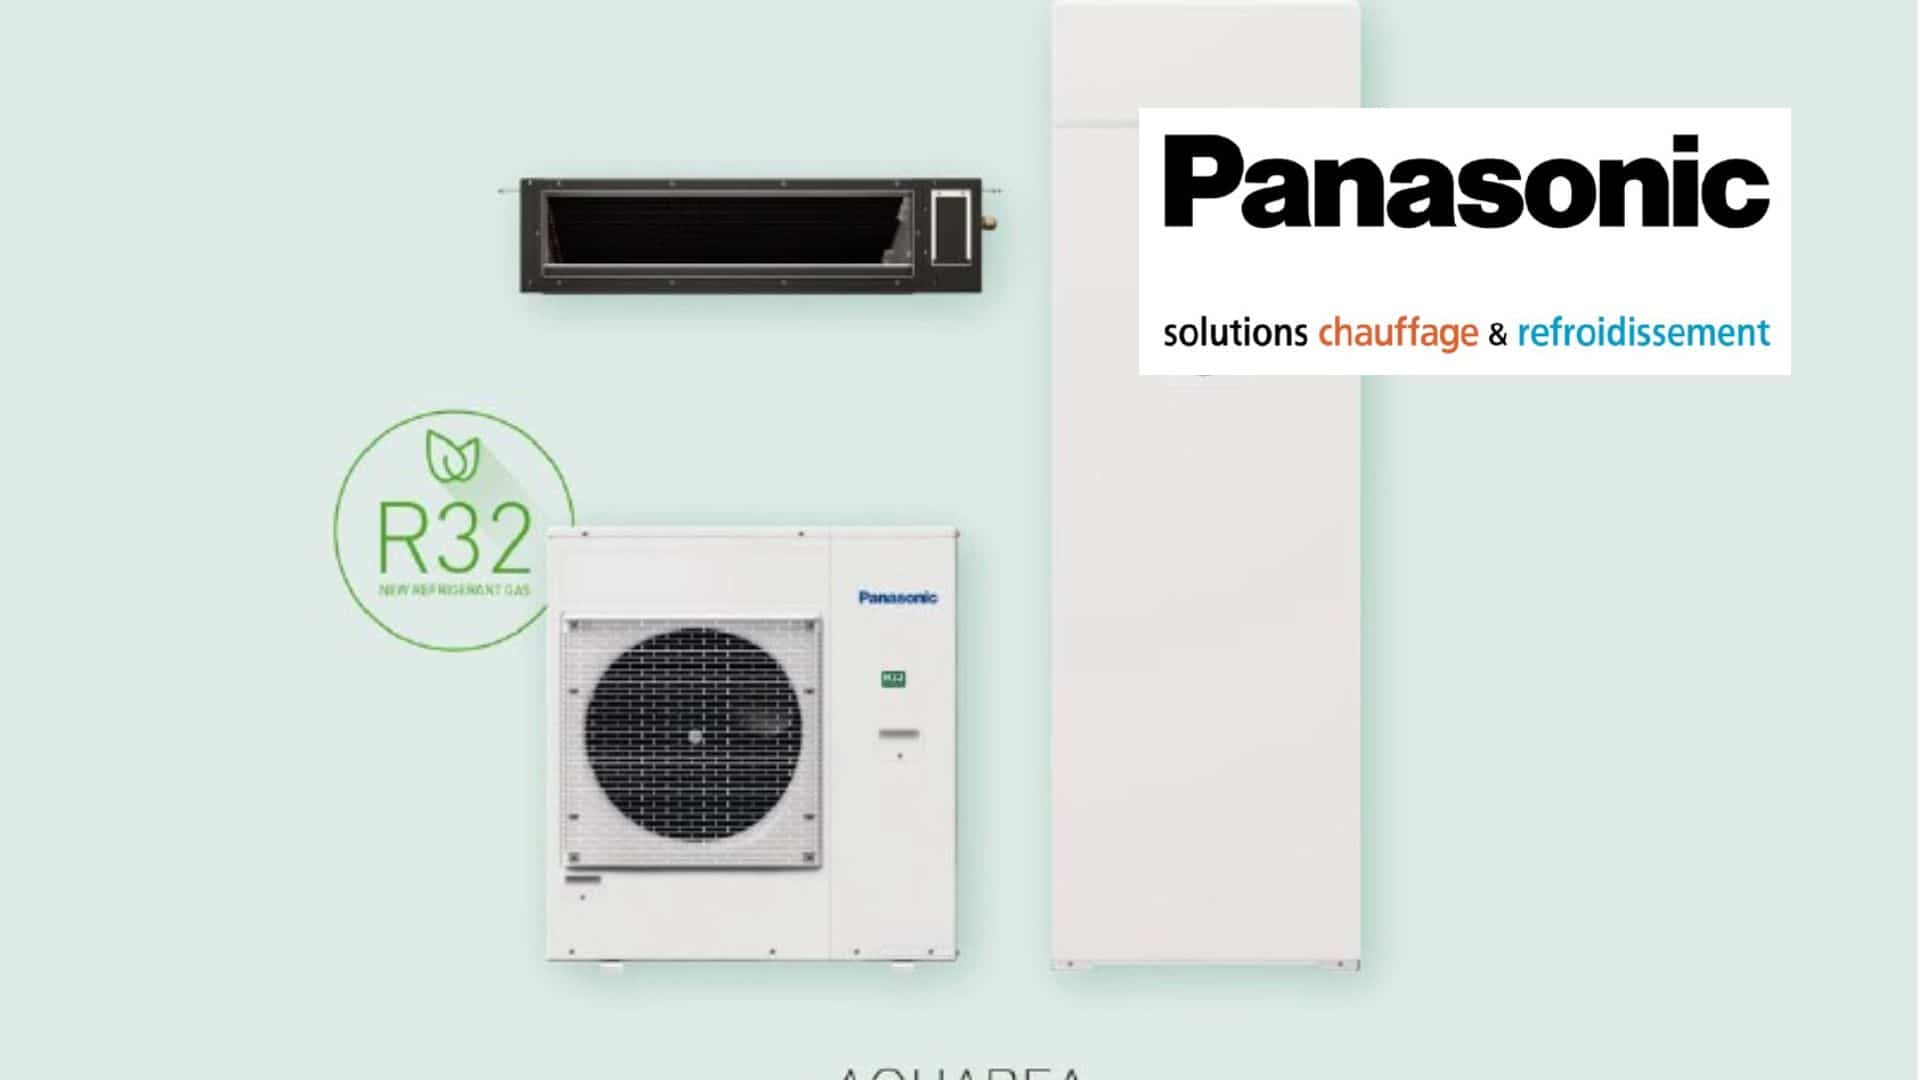 Panasonic révolutionne le chauffage et le rafraichissement avec Aquarea EcoFleX, sa solution 2 en 1 !